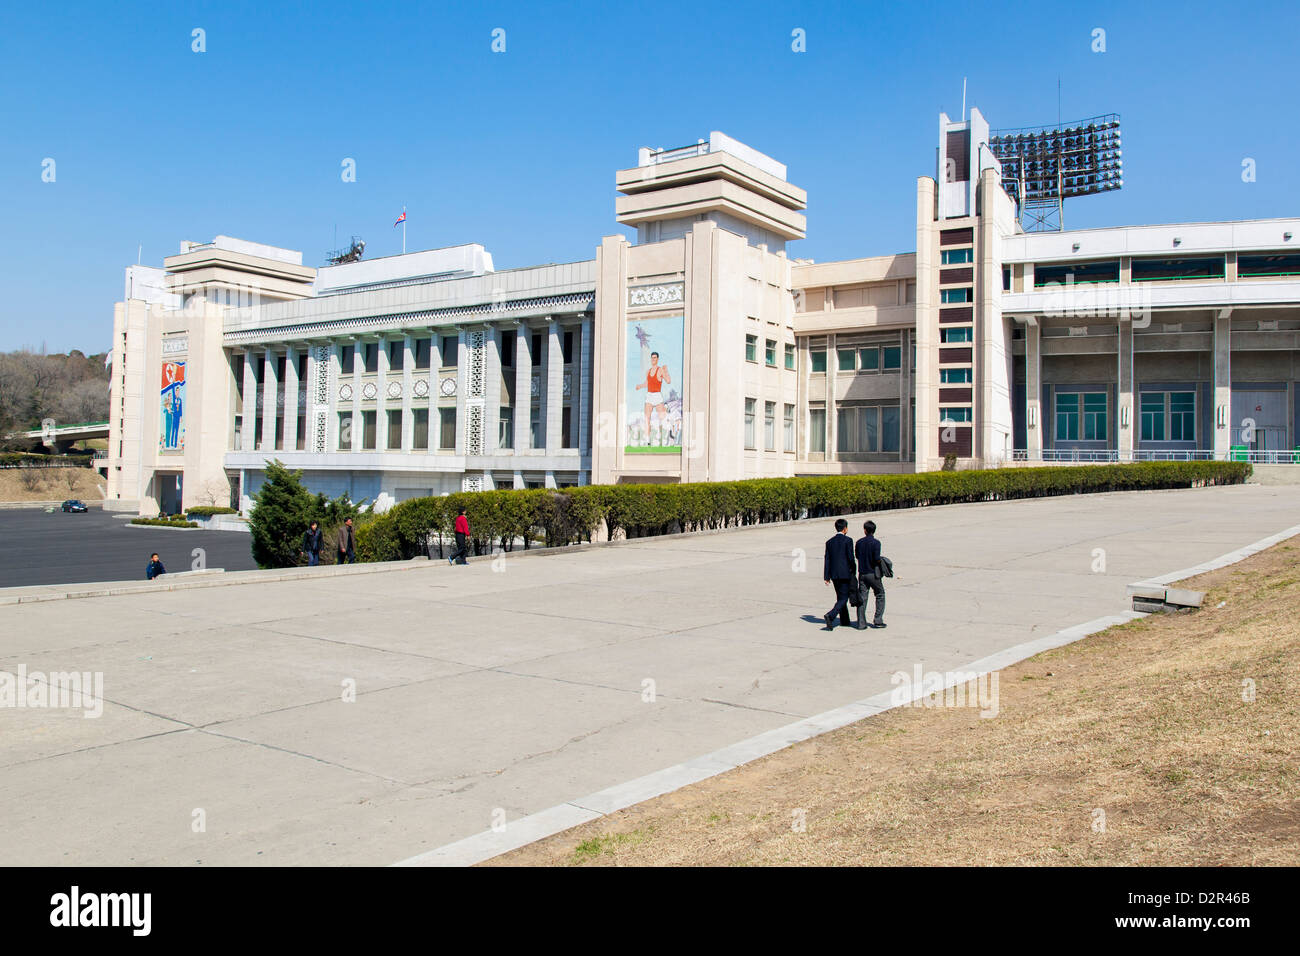 Kim Il Sung Stadium, Pyongyang, Repubblica Popolare Democratica di Corea (DPRK), la Corea del Nord, Asia Foto Stock